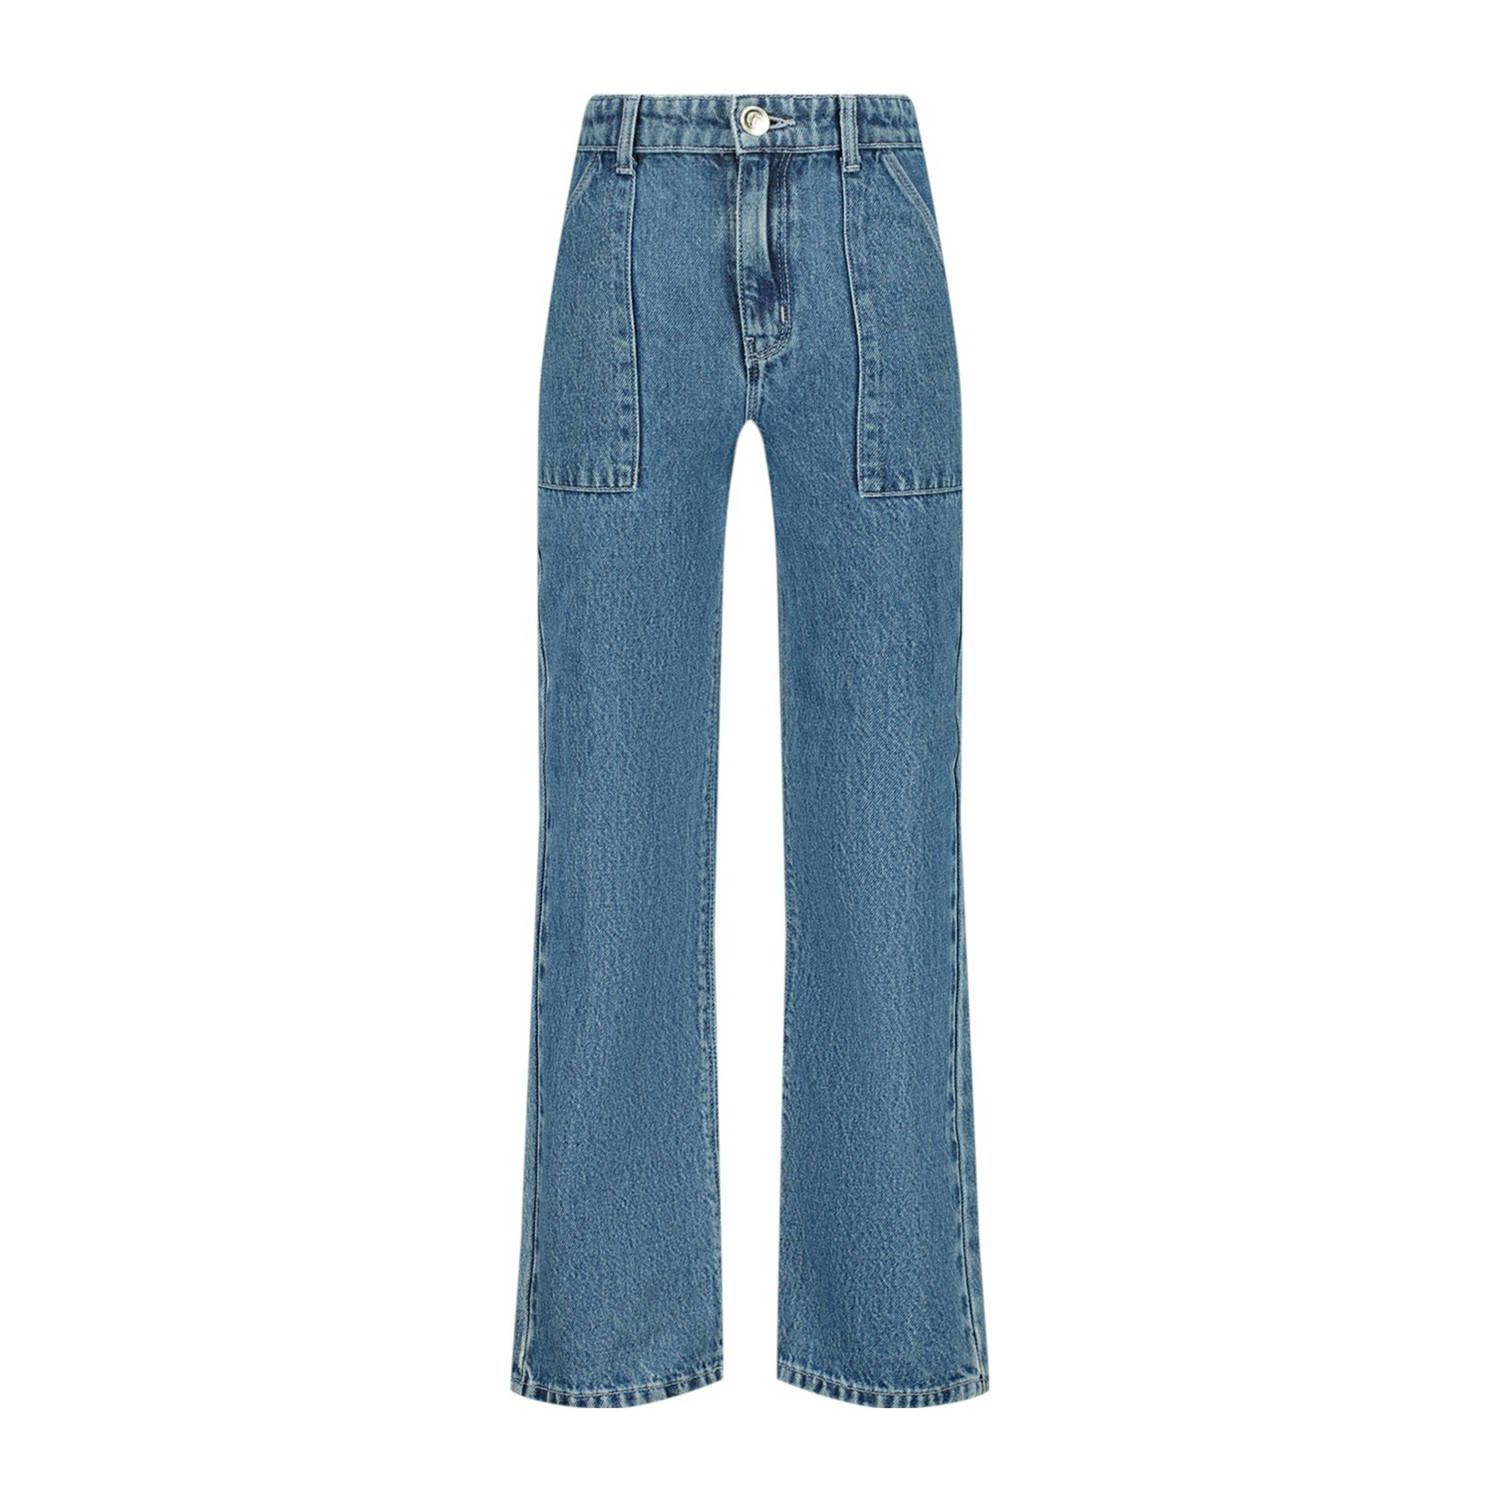 Raizzed wide leg jeans Mississippi Worker mid blue stone Blauw Meisjes Denim 128